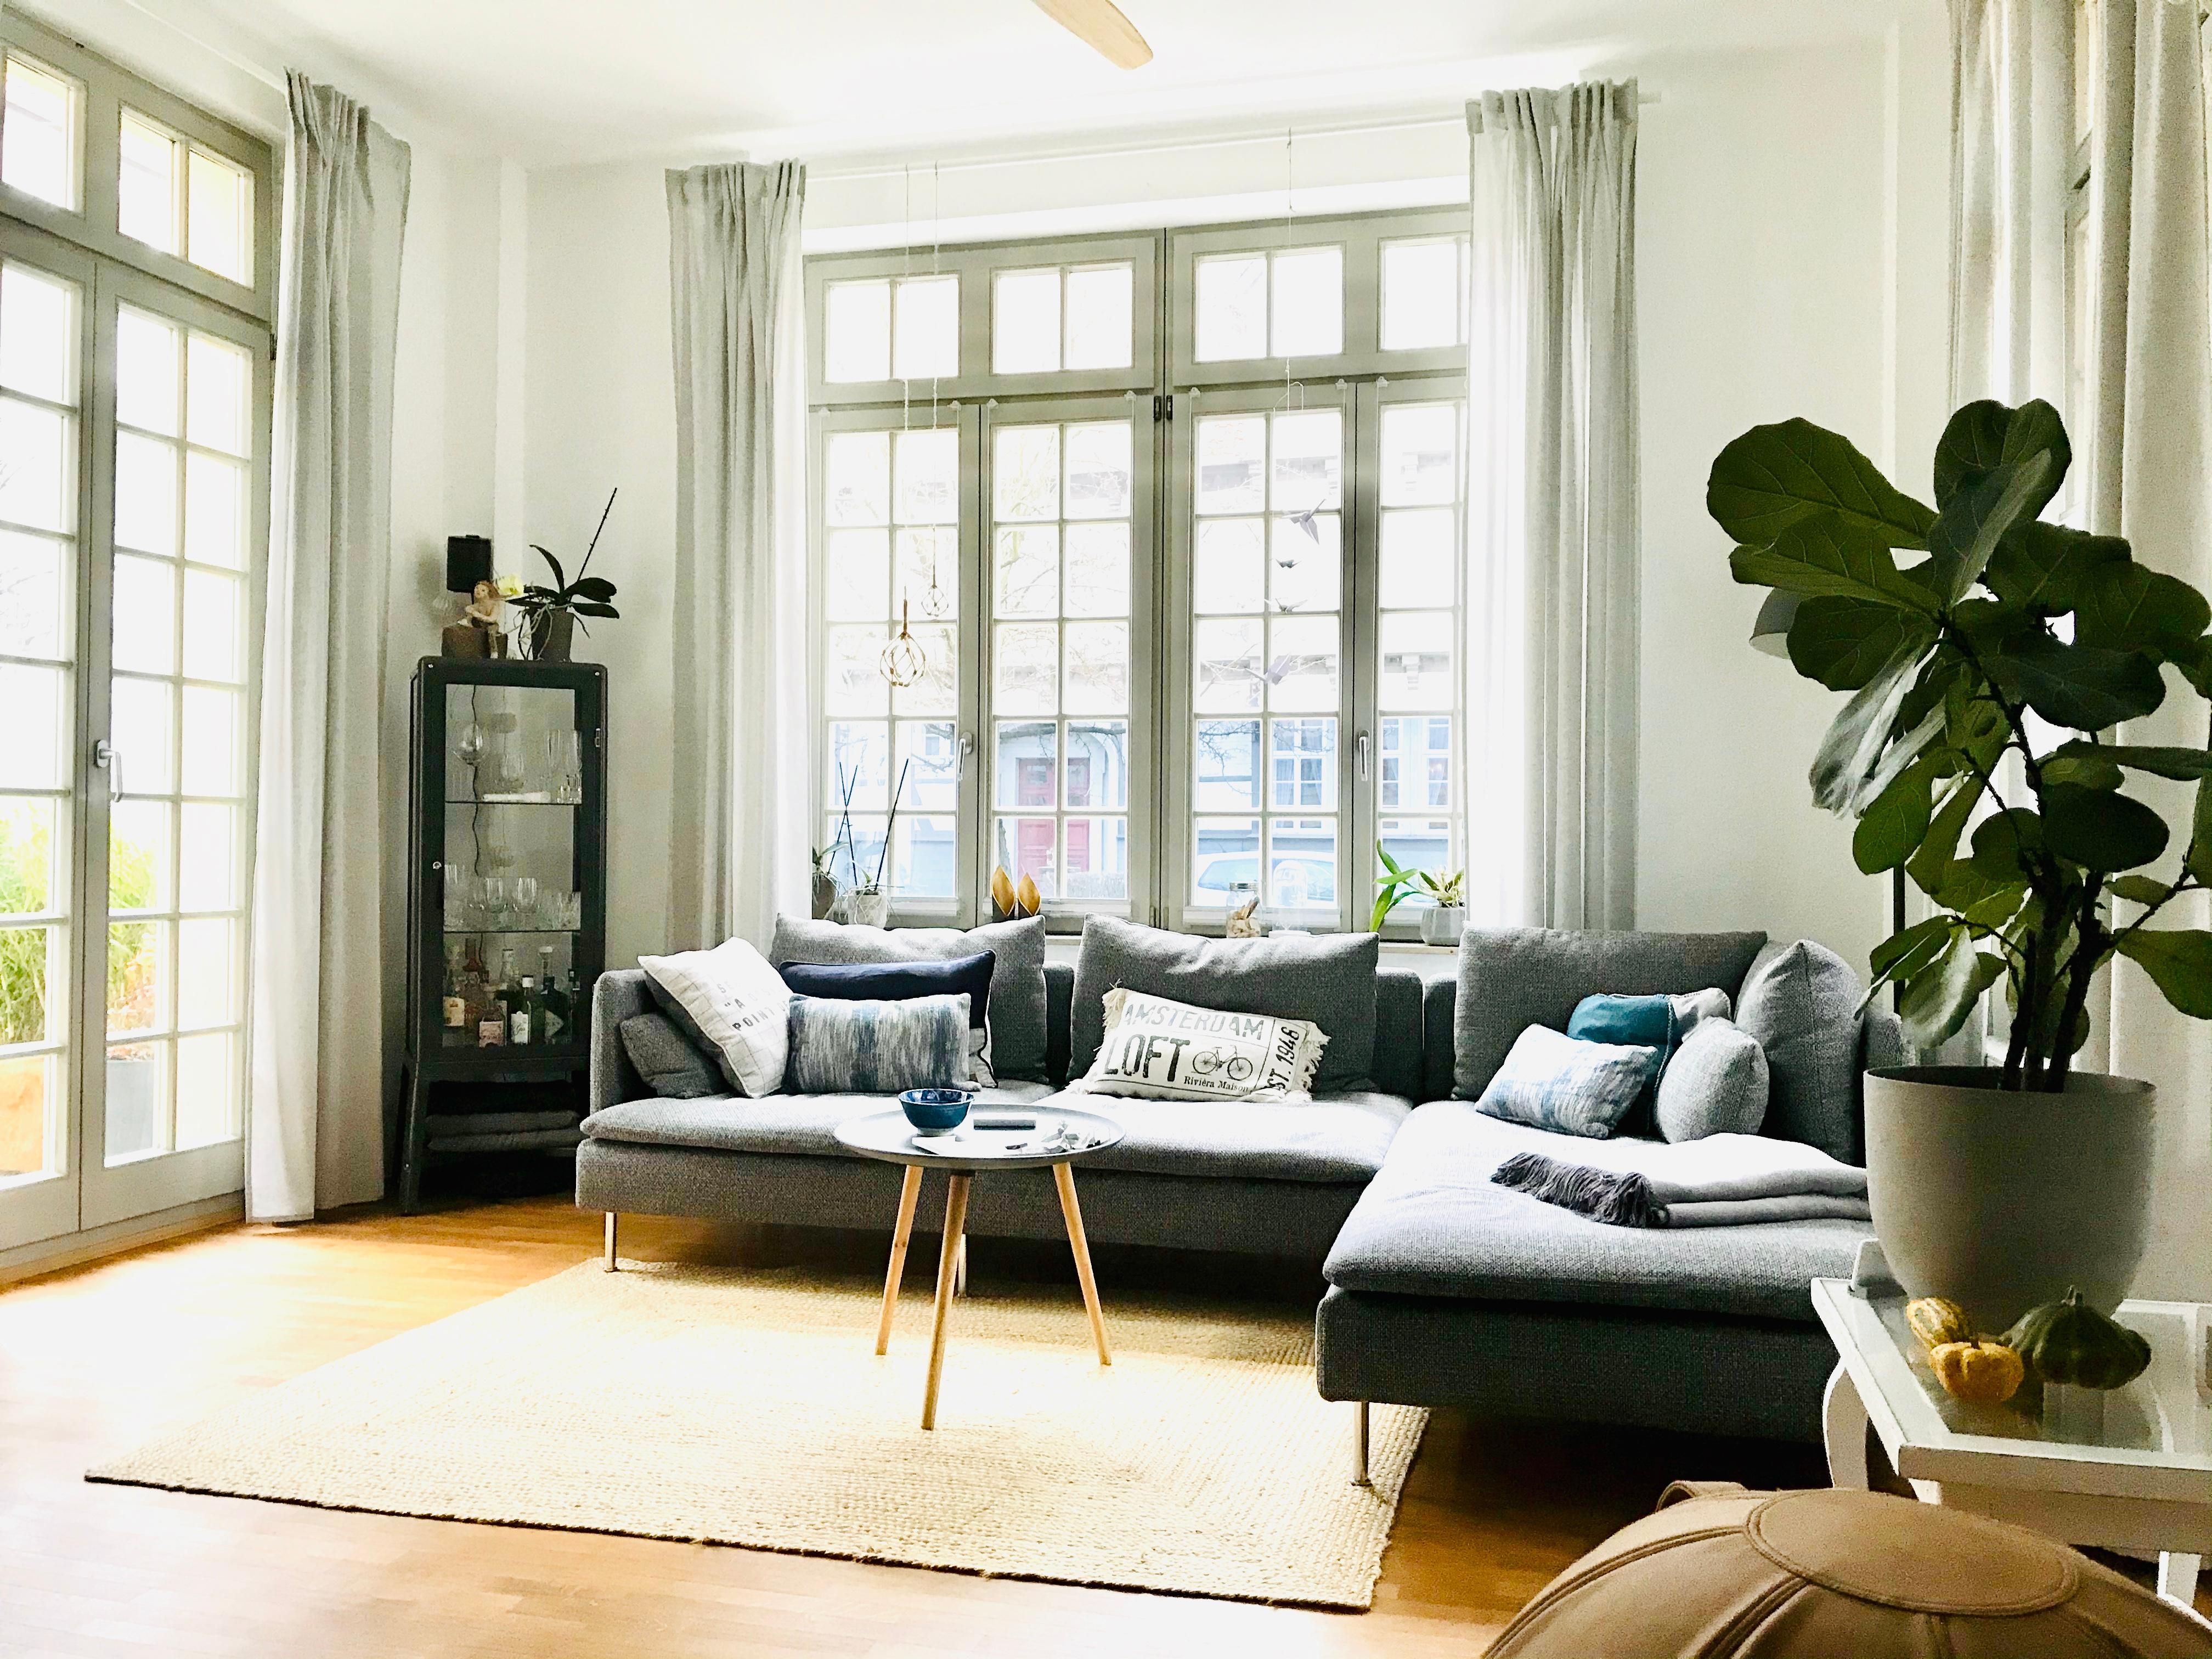 Wohnzimmer #couch #geigenfeige #cozy #windows